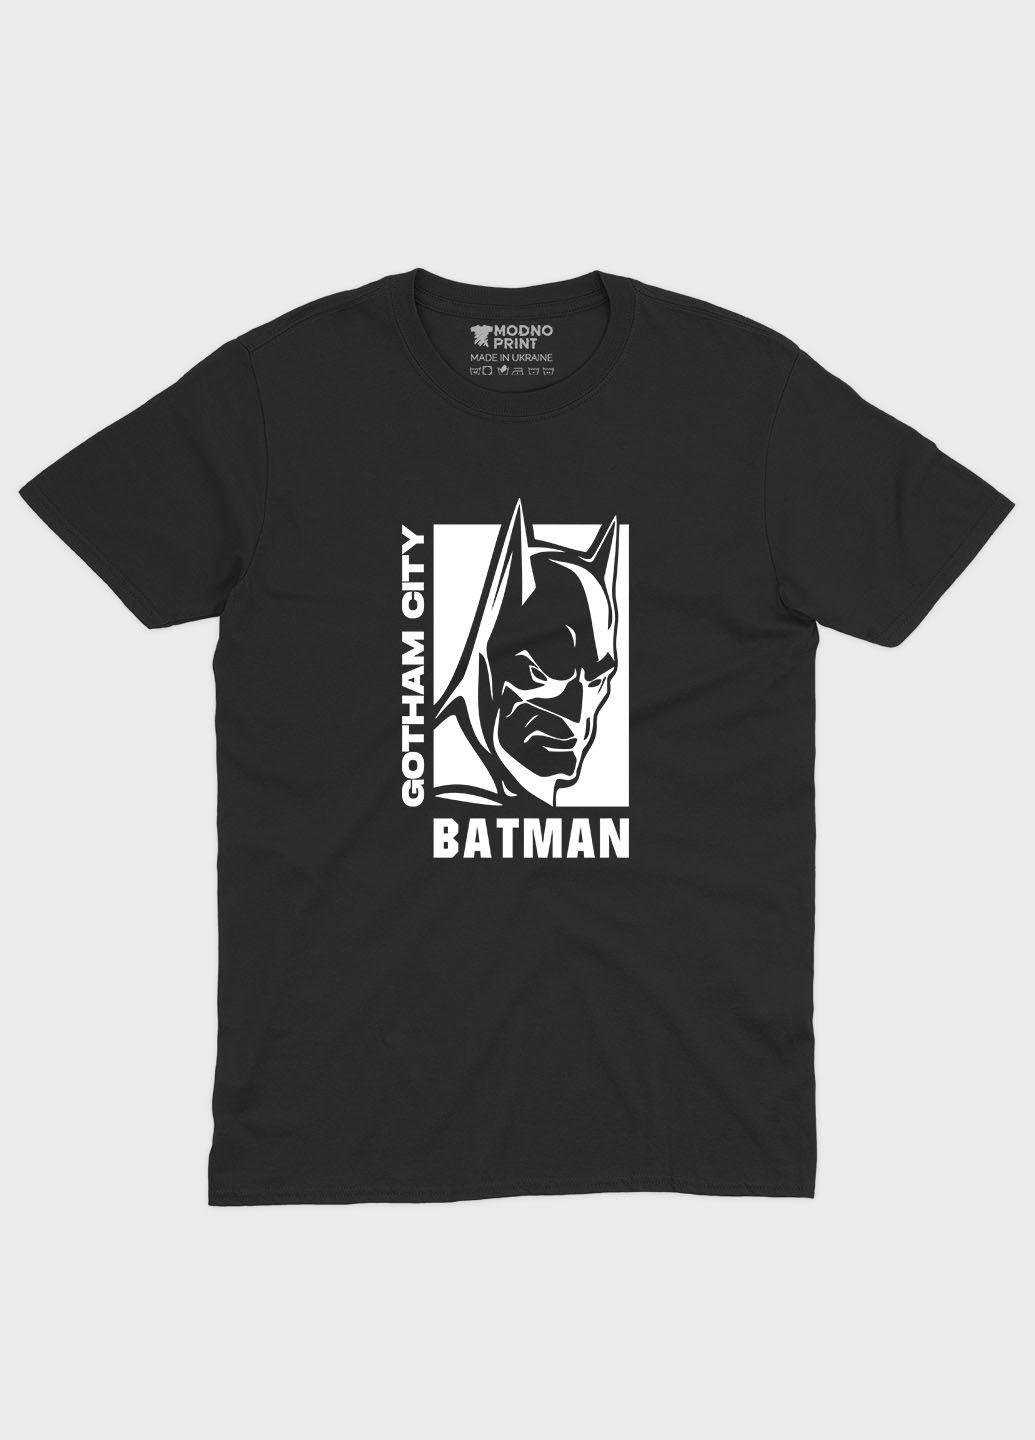 Черная демисезонная футболка для мальчика с принтом супергероя - бэтмен (ts001-1-bl-006-003-008-b) Modno